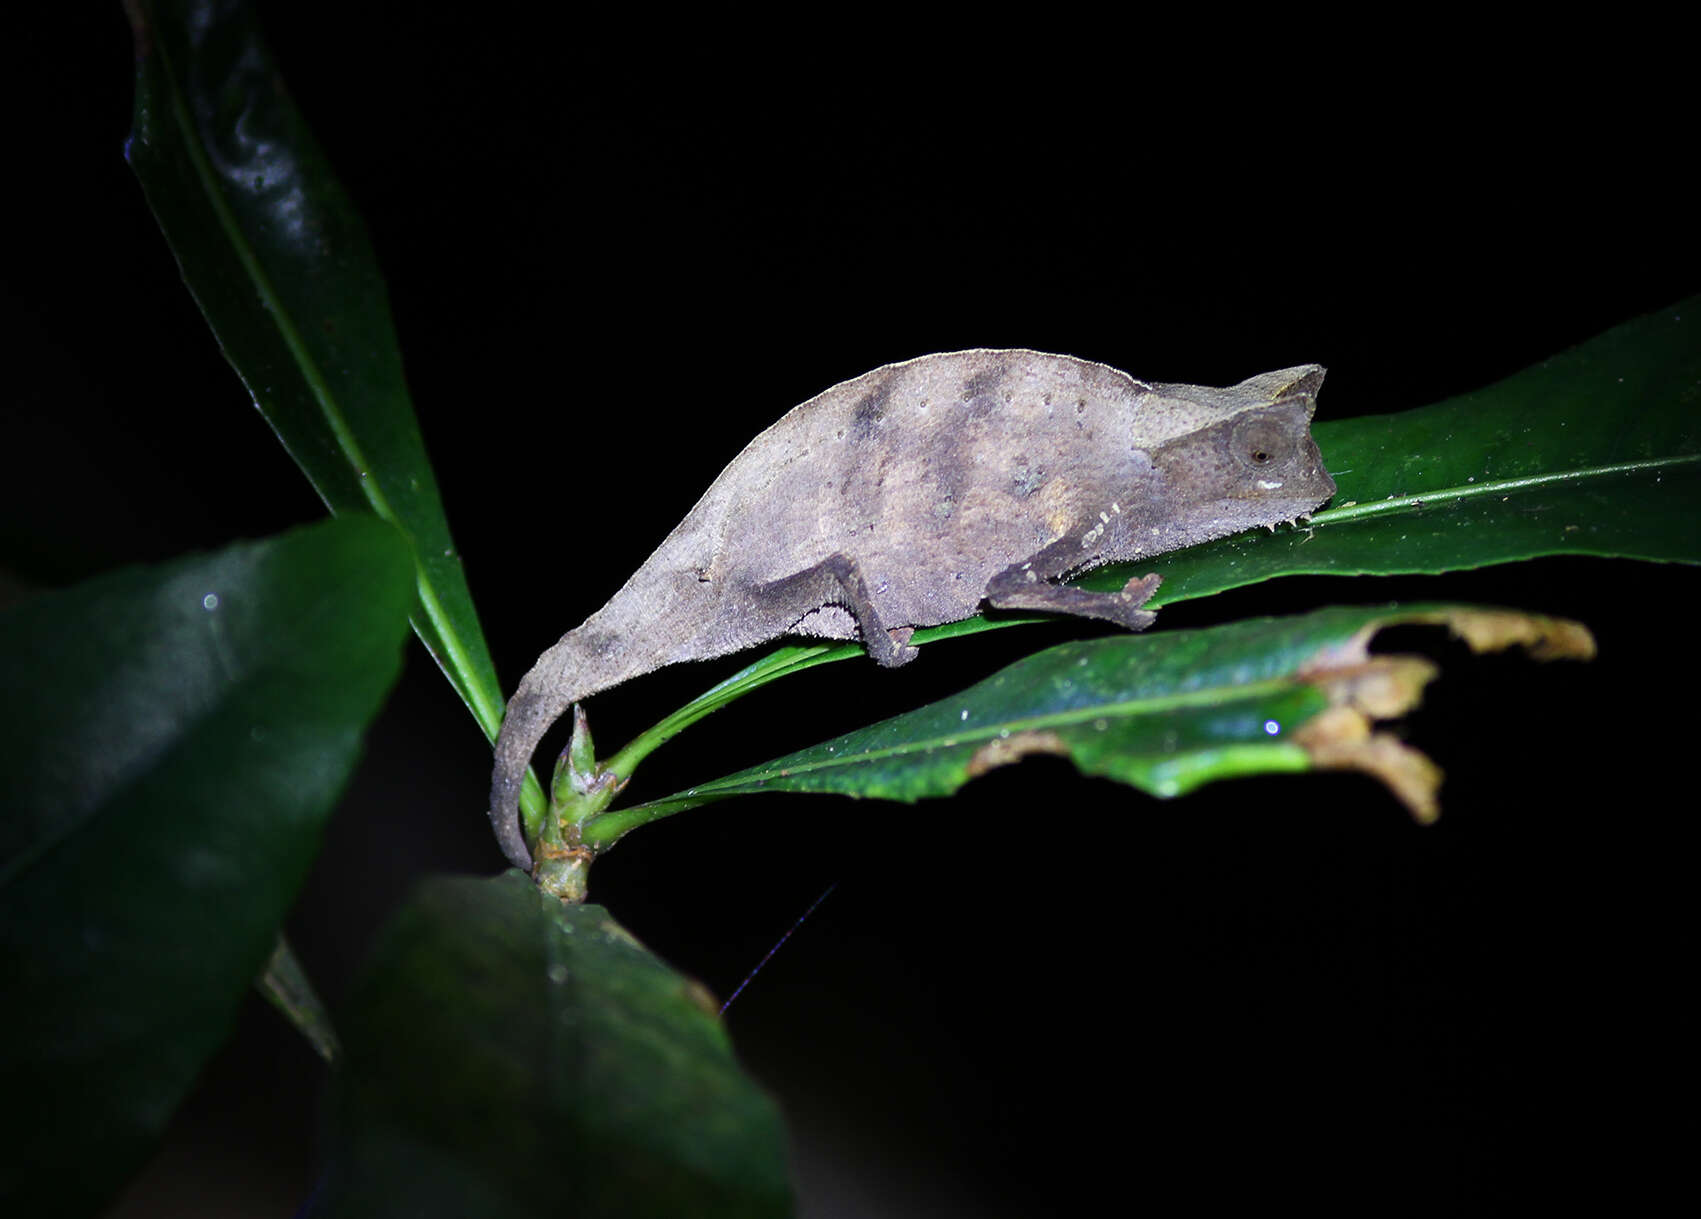 Image of Brown Leaf Chameleon